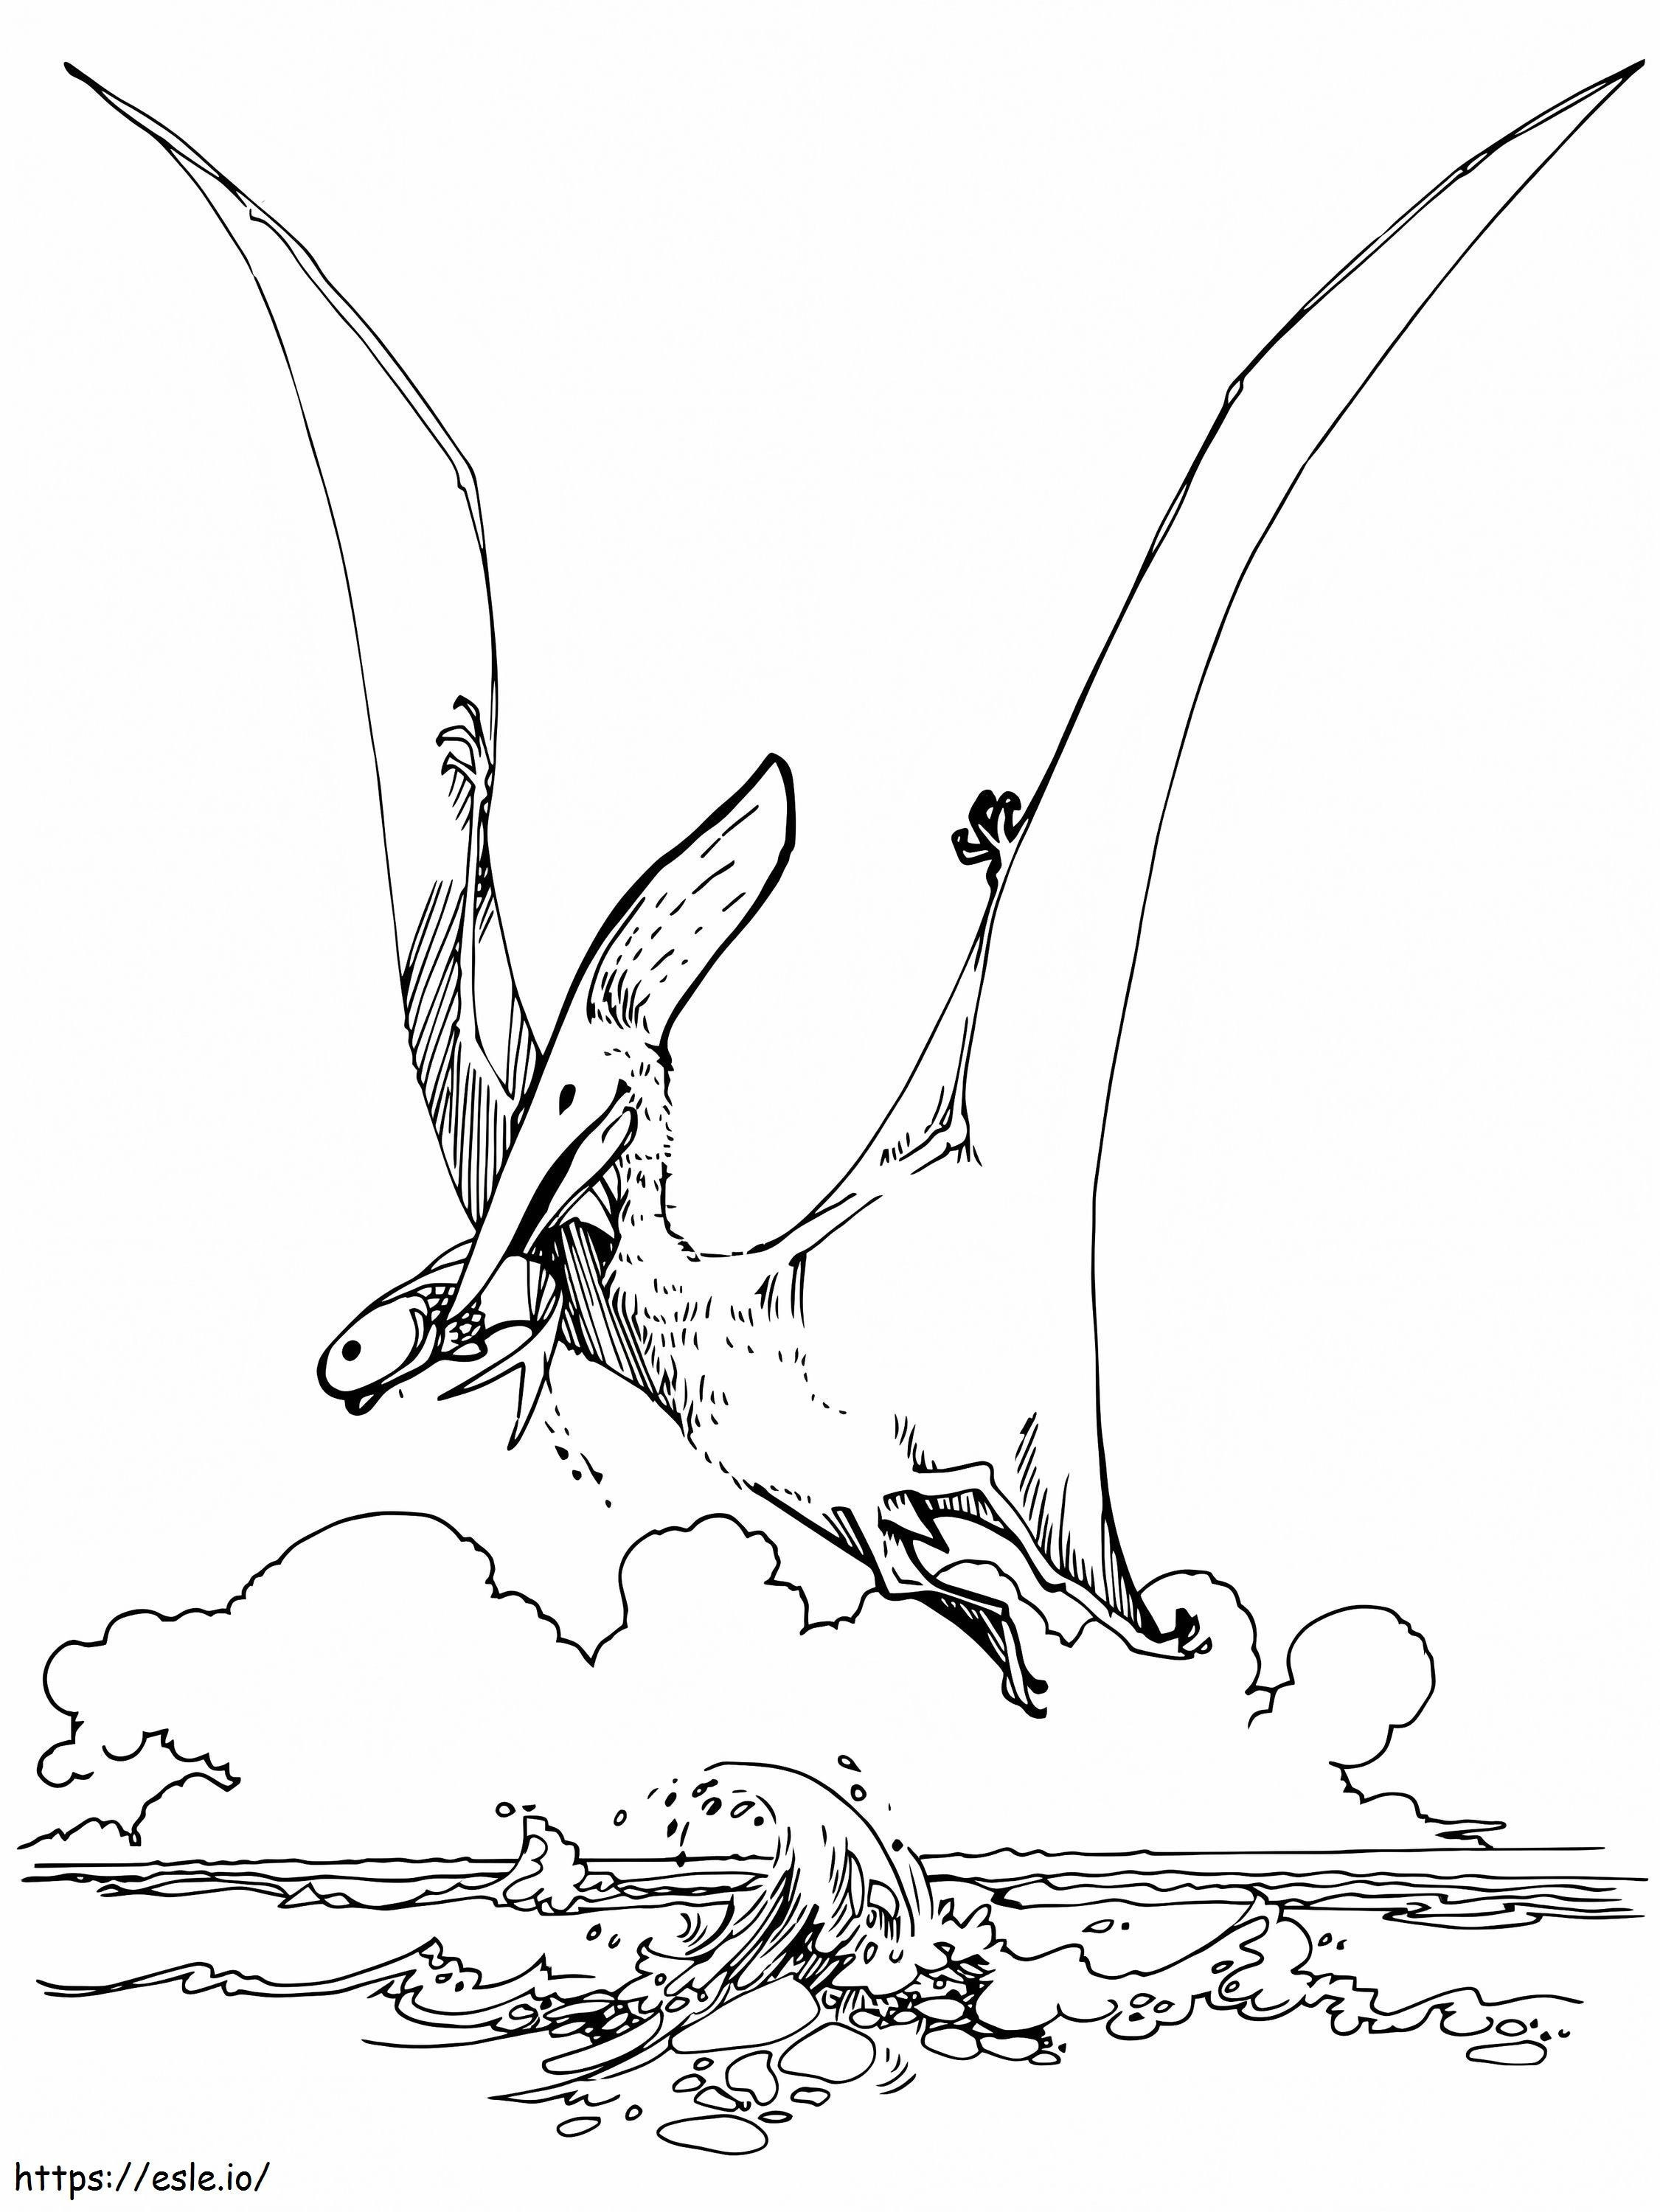 Dinossauro Pteranodonte para colorir